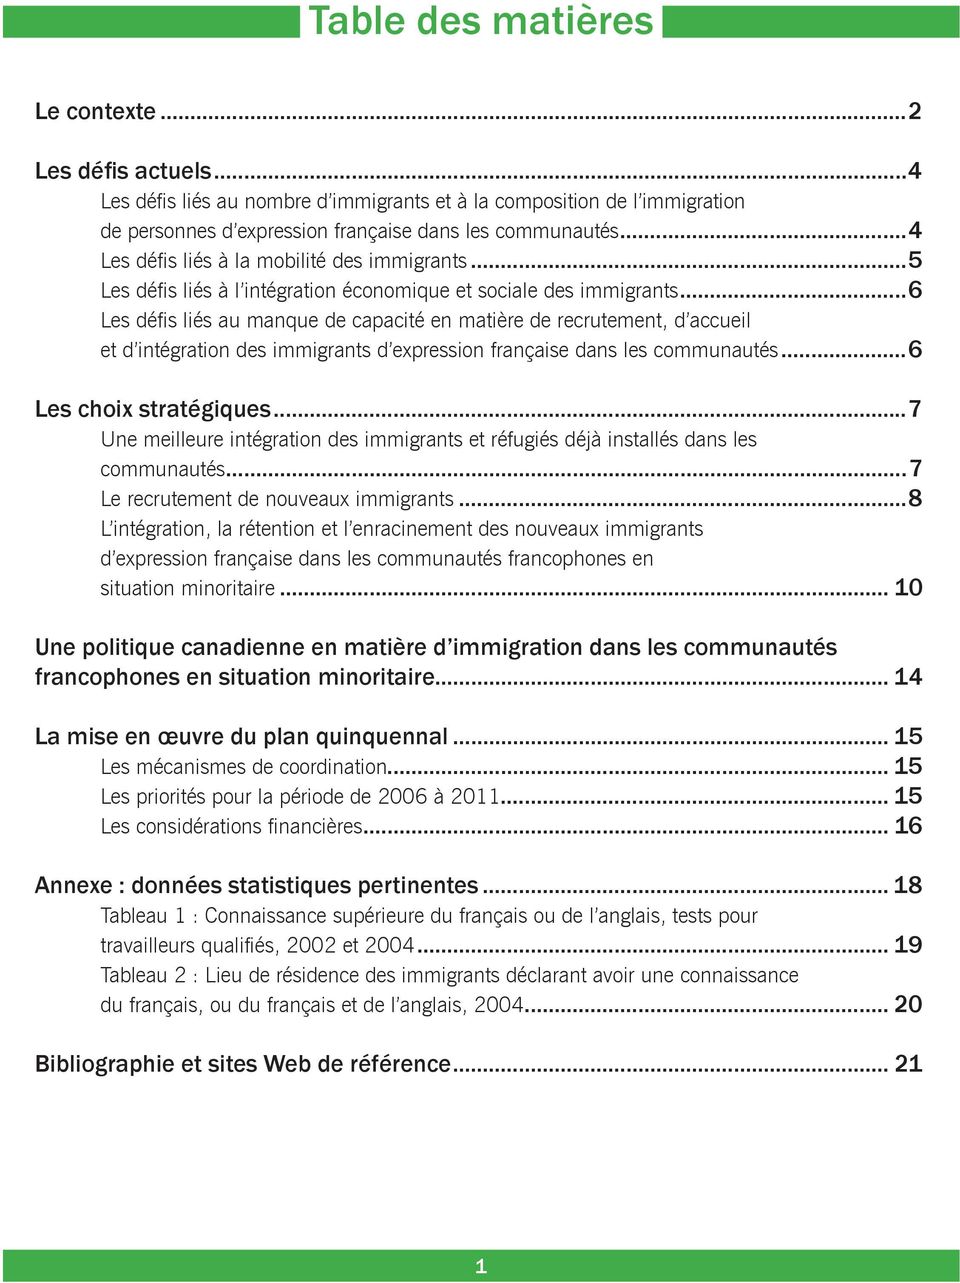 ..6 Les défis liés au manque de capacité en matière de recrutement, d accueil et d intégration des immigrants d expression française dans les communautés...6 Les choix stratégiques.